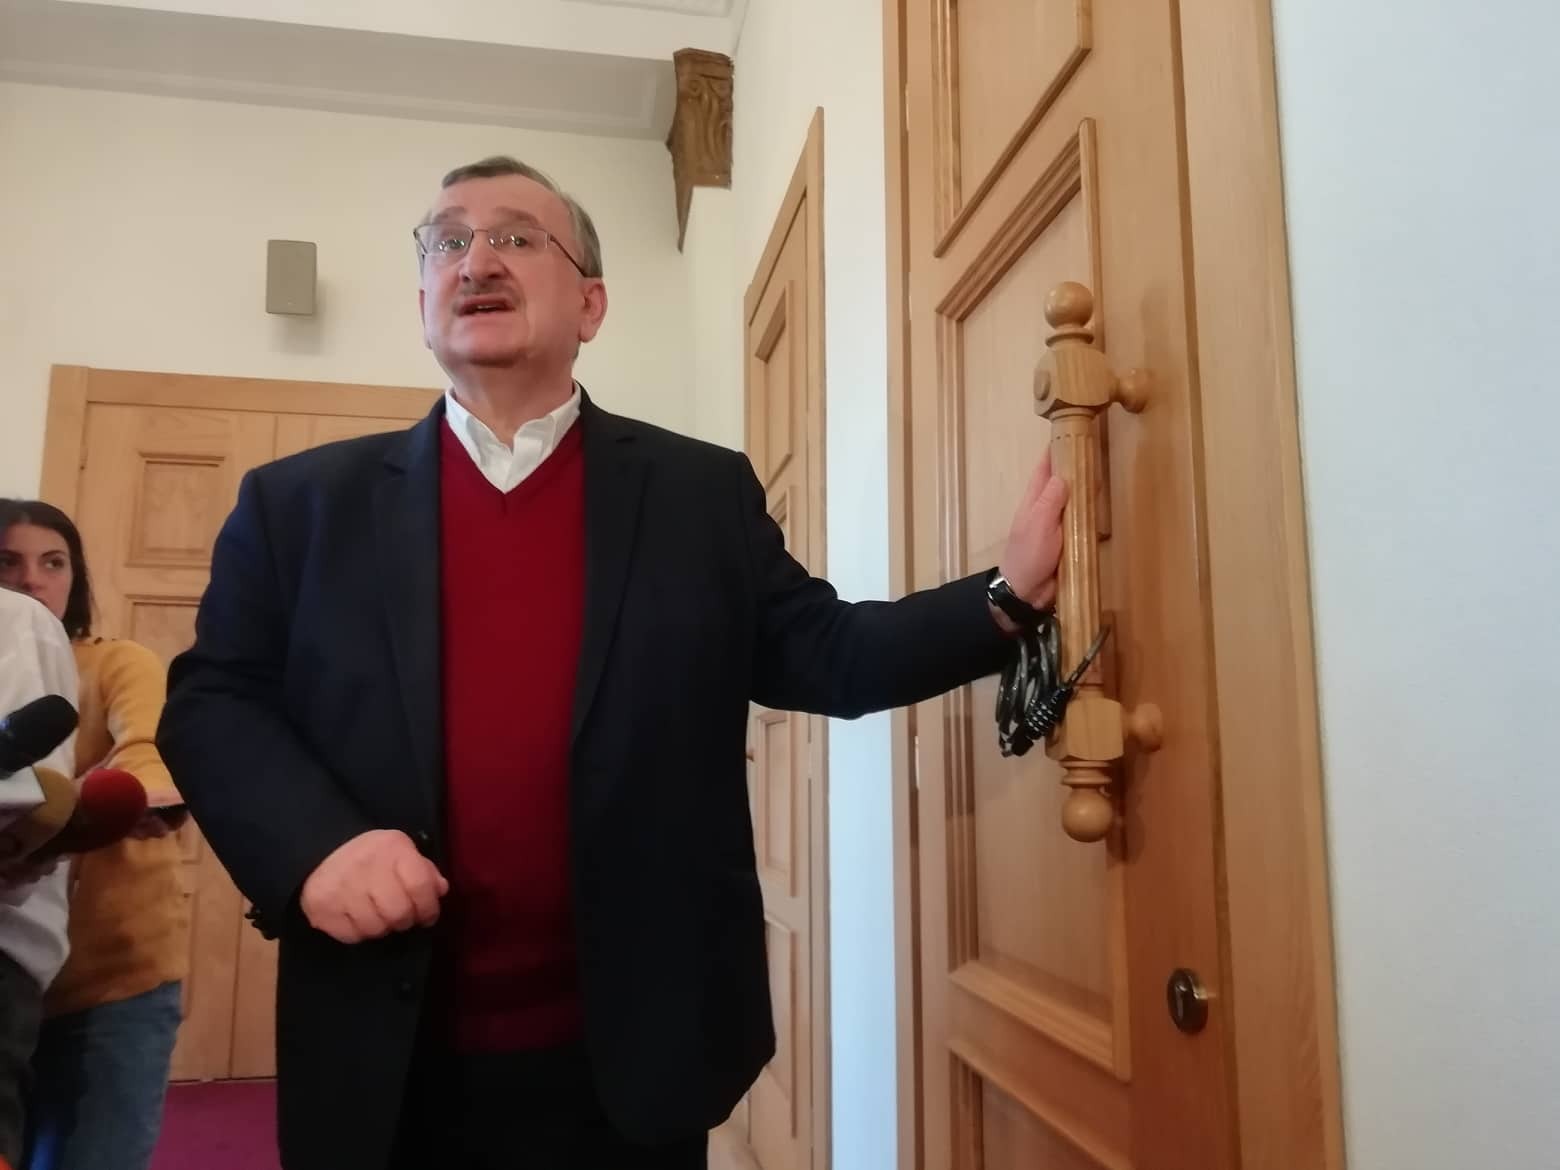 Оппозиция закрыла на замок дверь зала заседаний парламента Грузии